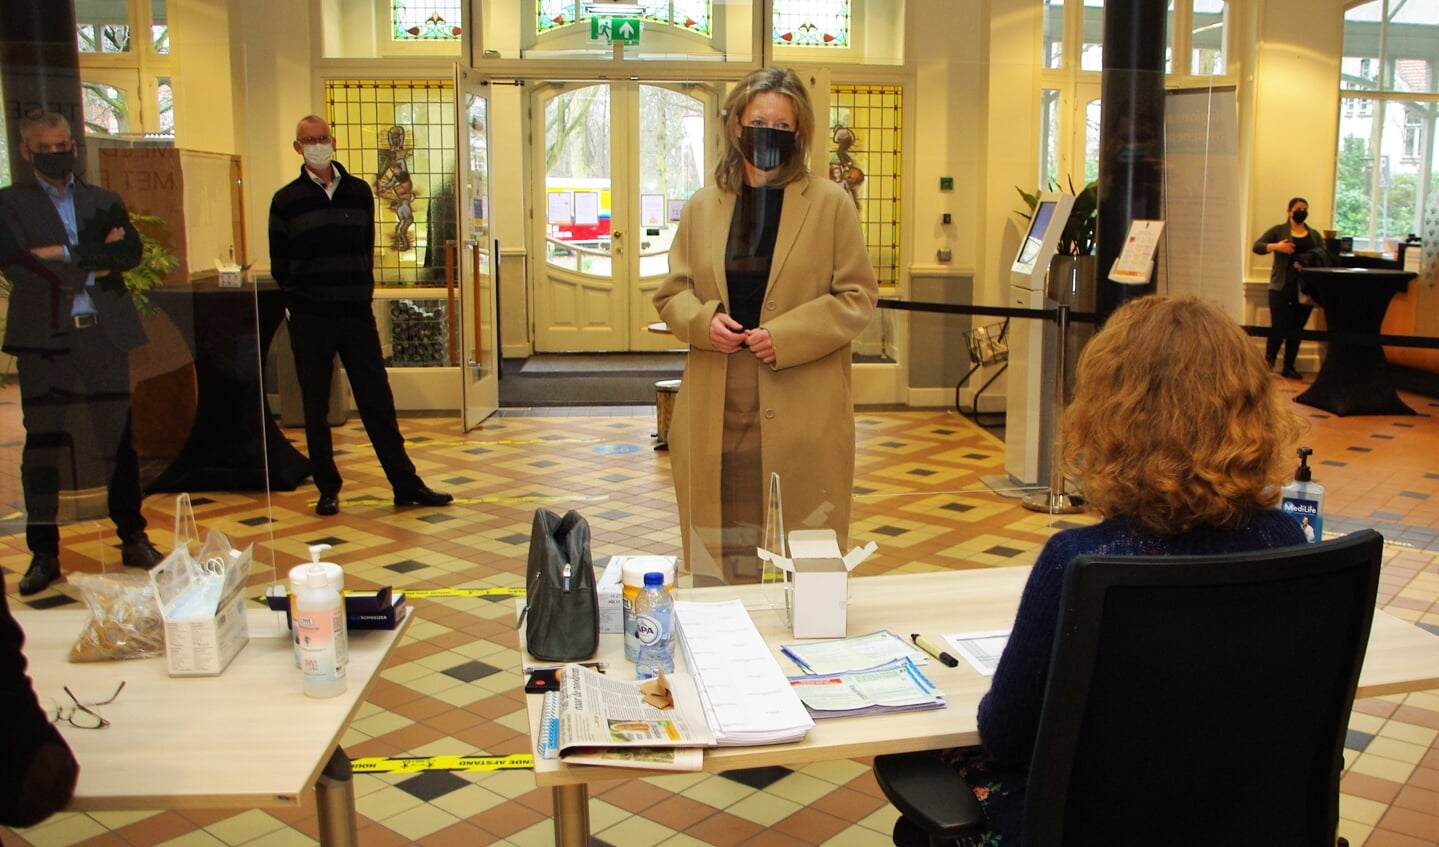 Minister Kajsa Ollongren bezoekt het stembureau in het Oegstgeester raadhuis. 